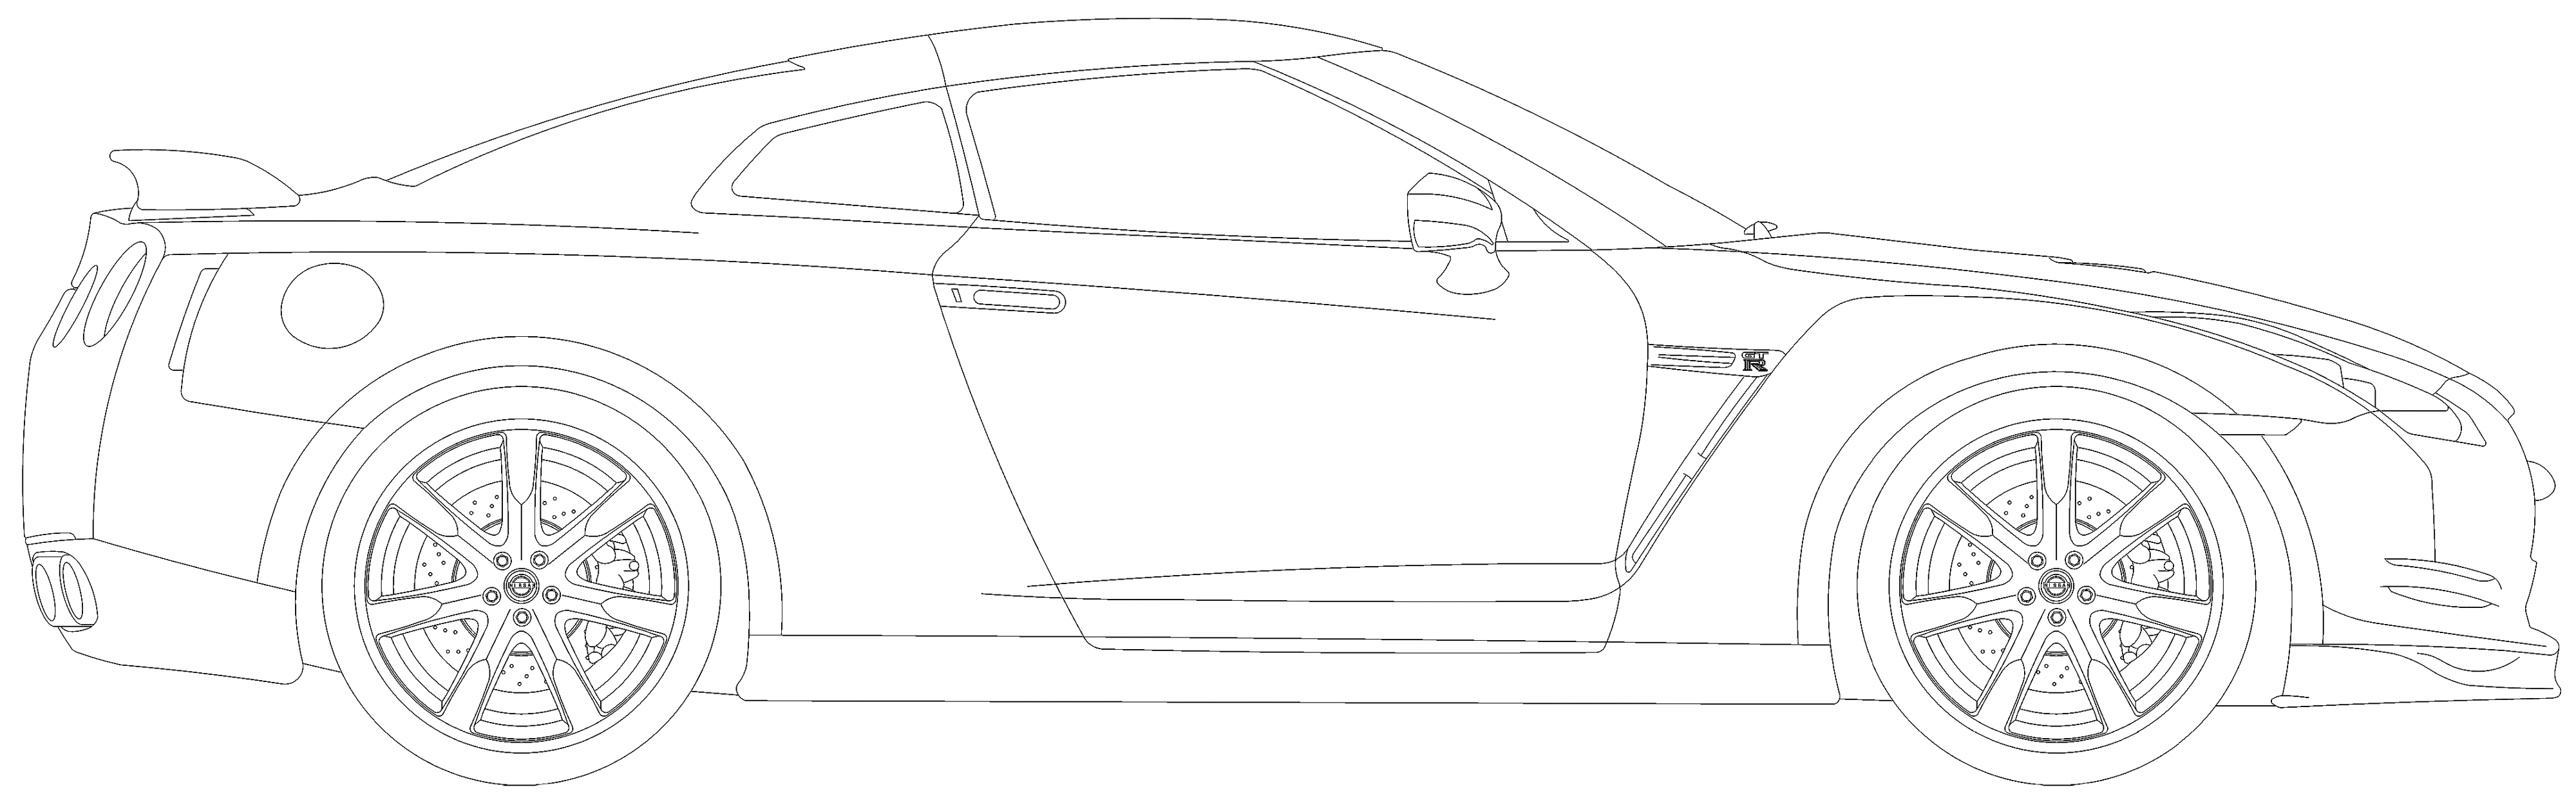 Nissan GTR r35 чертеж